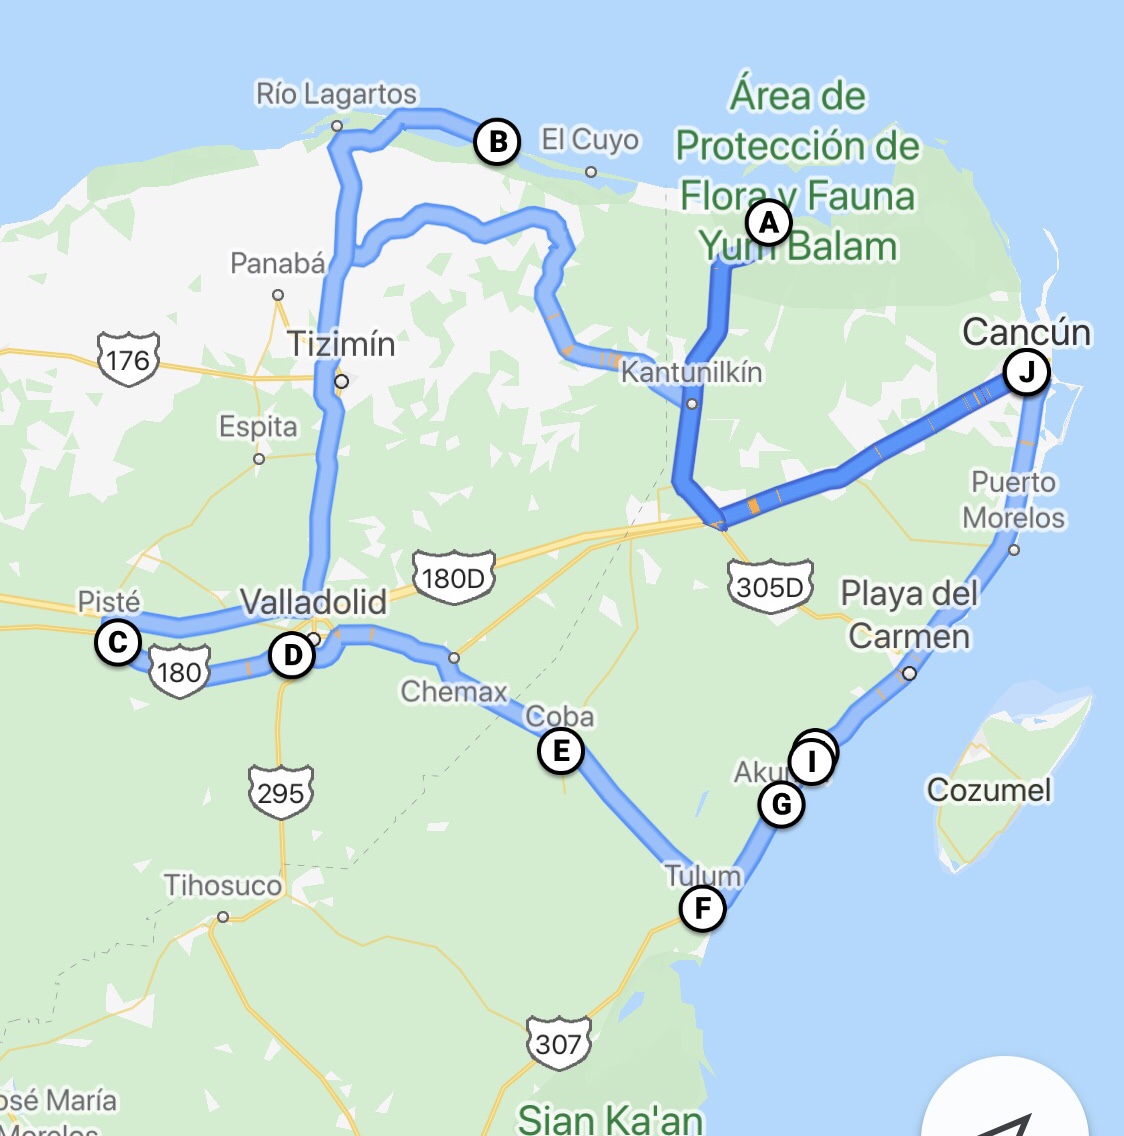 Notre plan Cancun - Chiquila - Holbox - Rio Lagertos et pink lake - Chichen Itza - Cenotes et Coba - Tulum et remontée vers Cancun